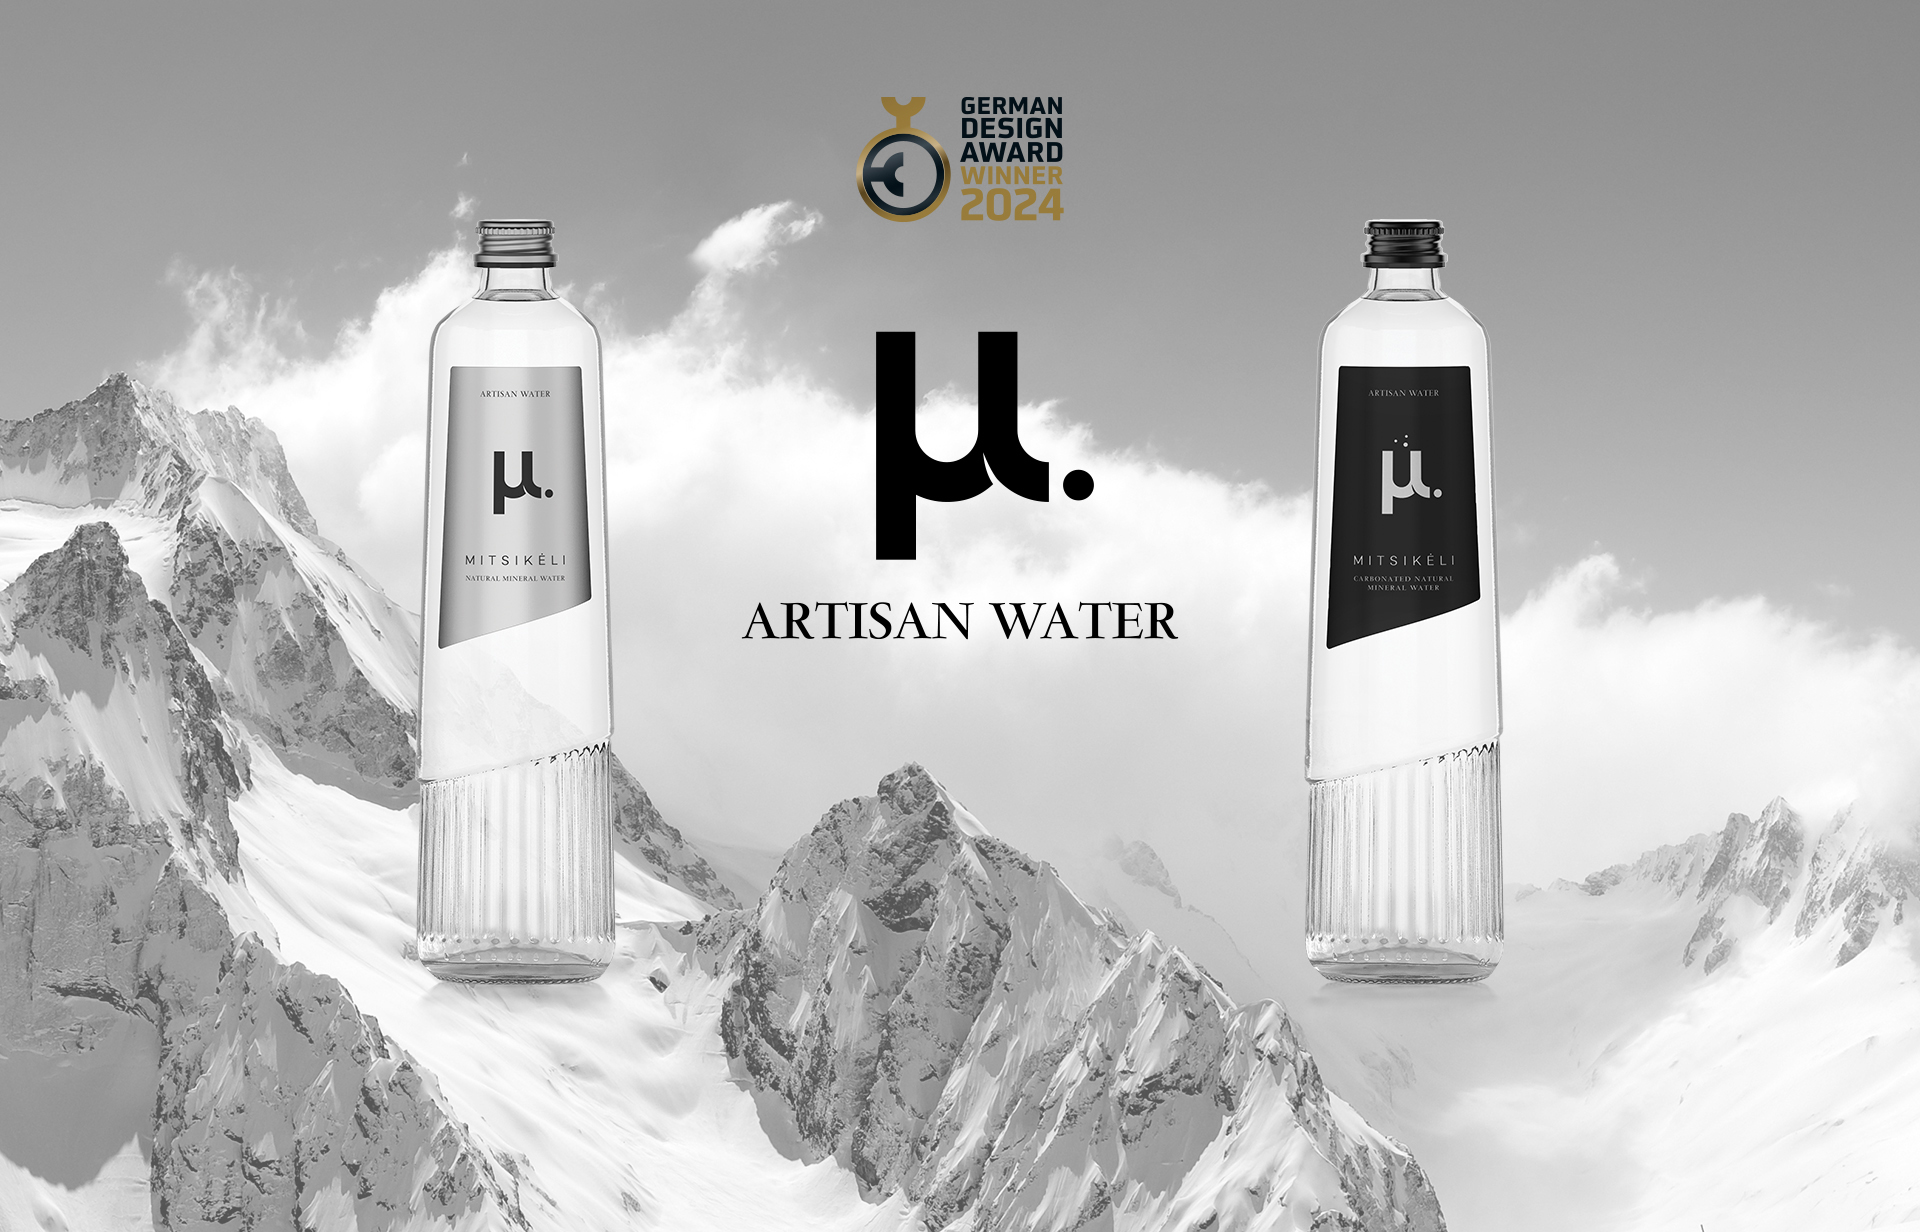 Το premium μ. Artisan Water θριάμβευσε για τον σχεδιασμό του στα φετινά German Design Awards